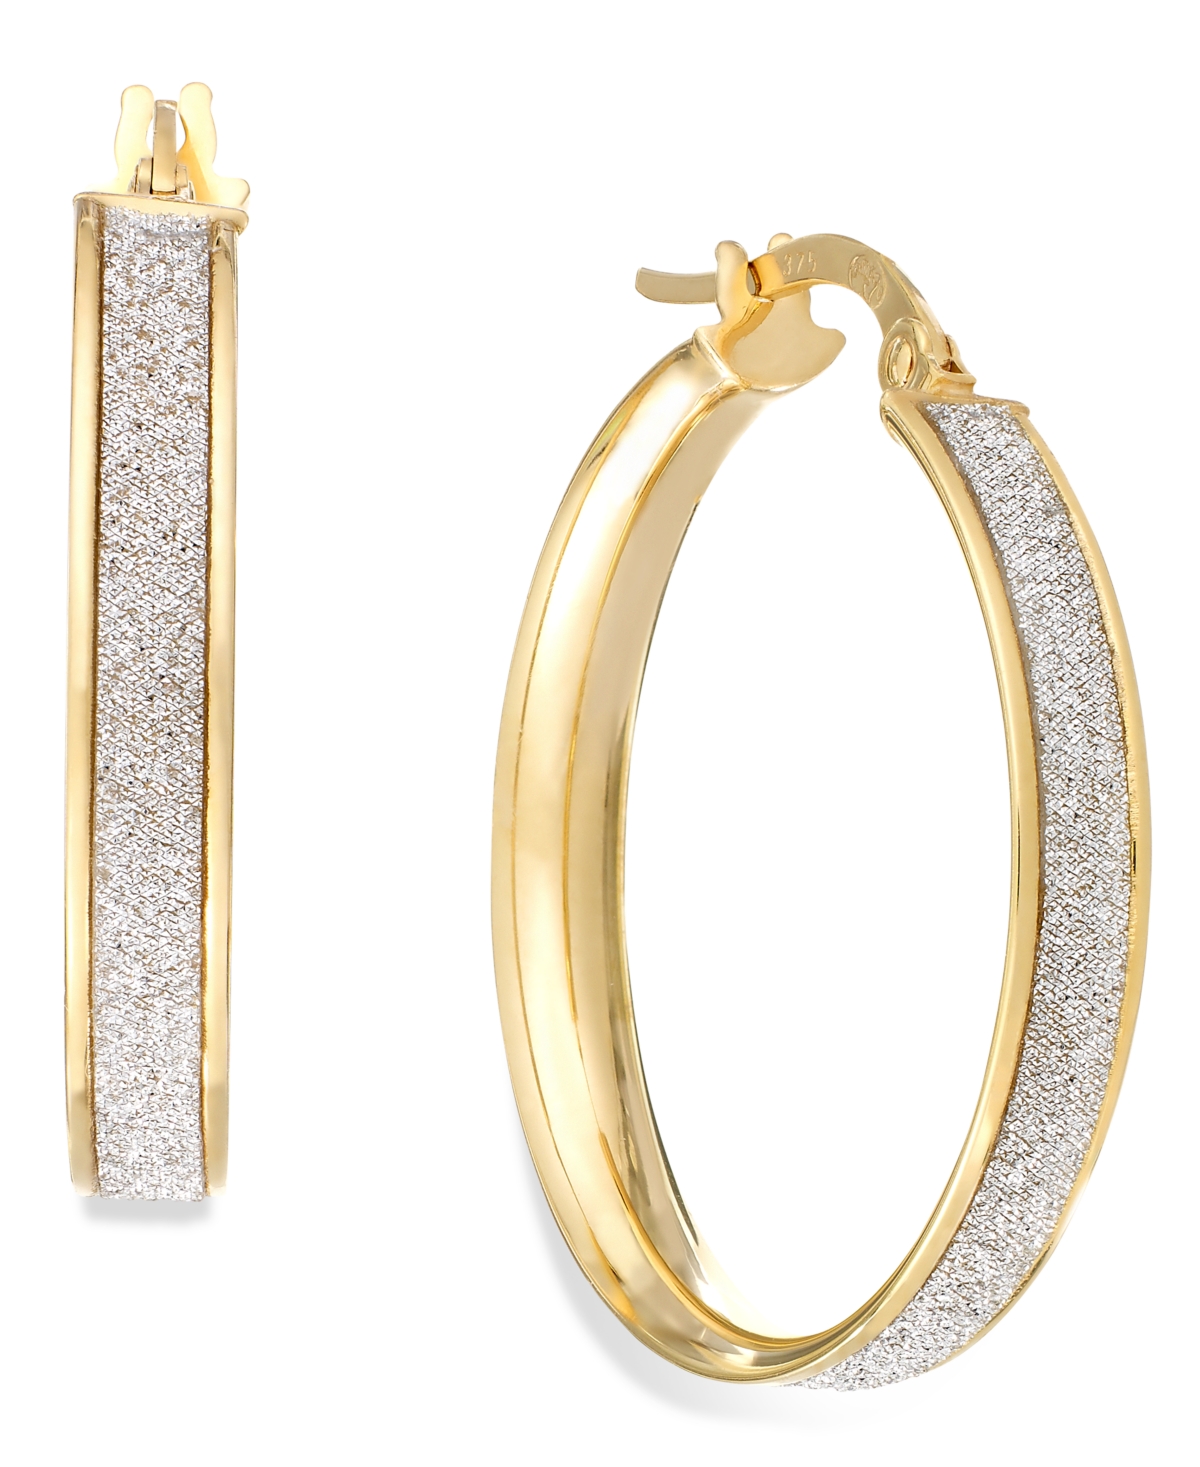 Glitter Hoop Earrings in 14k Gold (20mm) - Yellow Gold